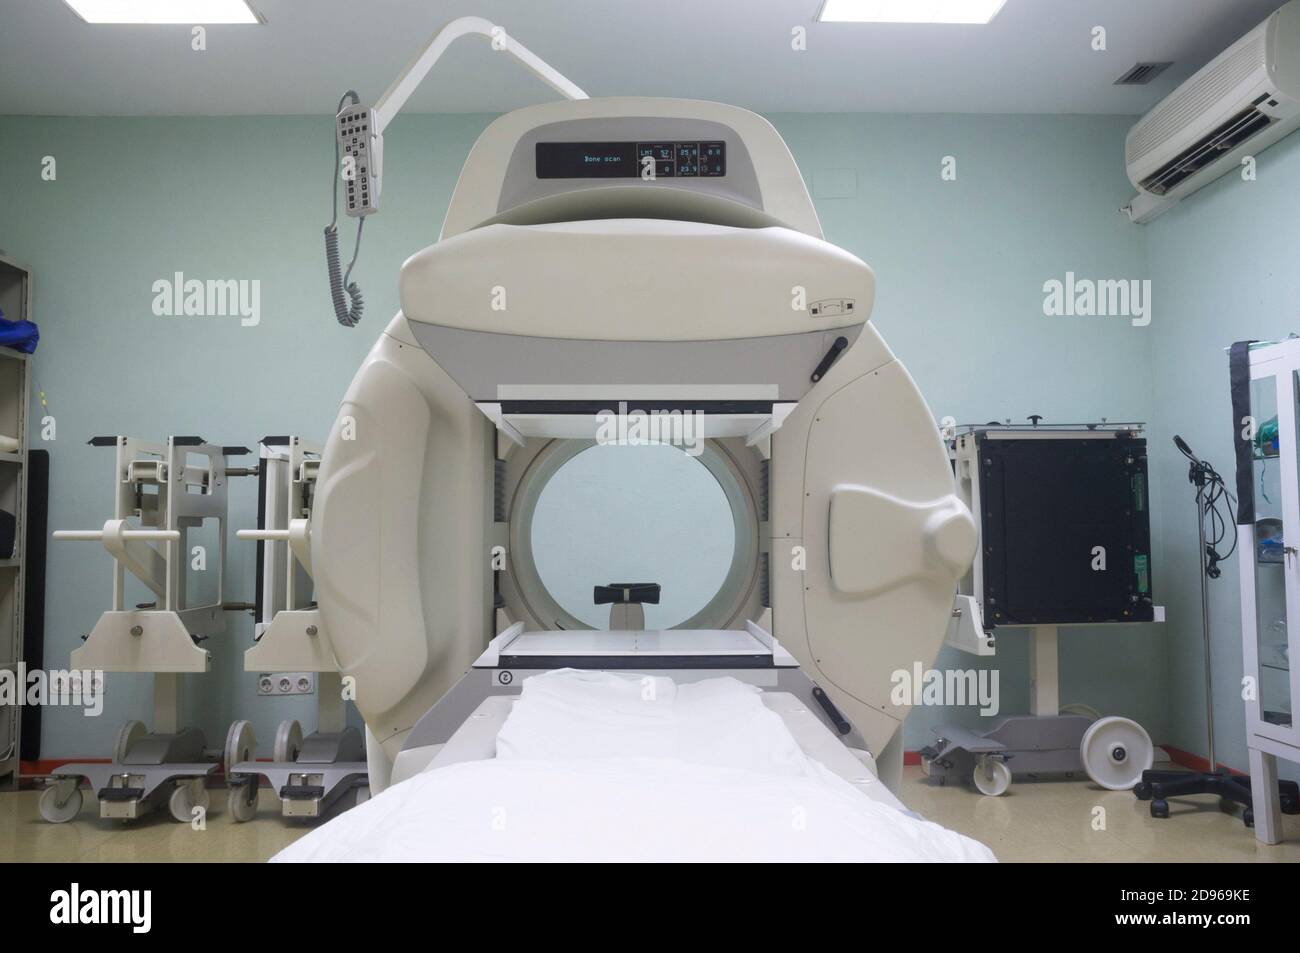 Nukleare Gamma-Kamera, Medizingerät verwendet, um Bilder des menschlichen Körpers oder die Verteilung der medizinisch injizierten analysieren. Weichfokus. Stockfoto